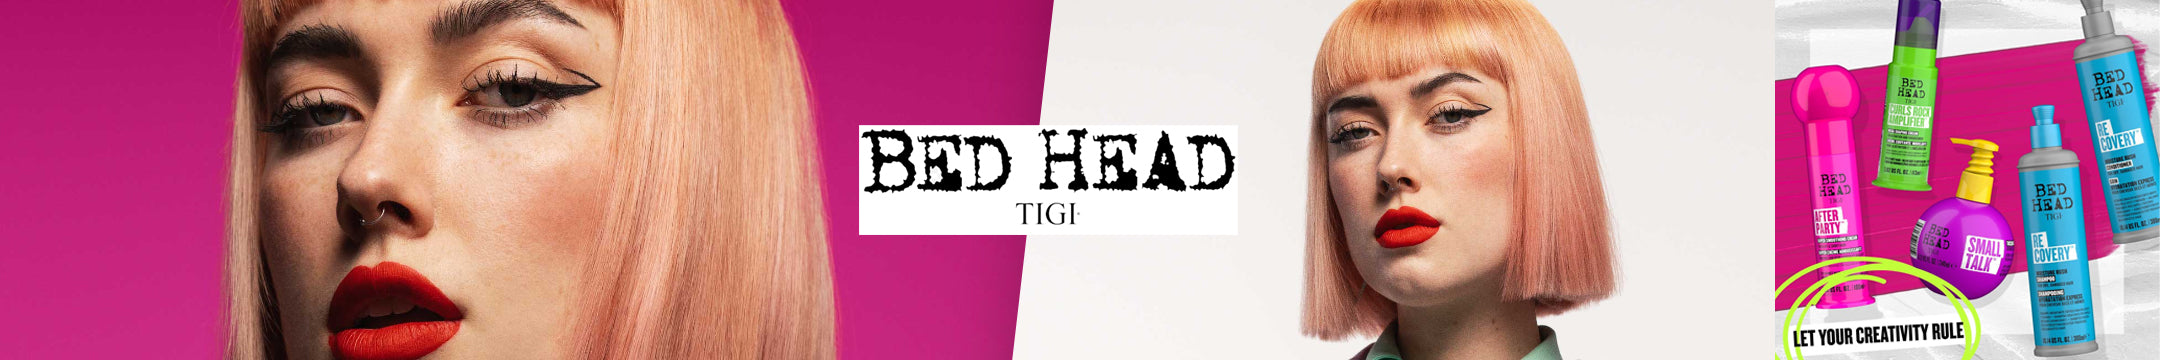 BED HEAD TIGI ON SALE